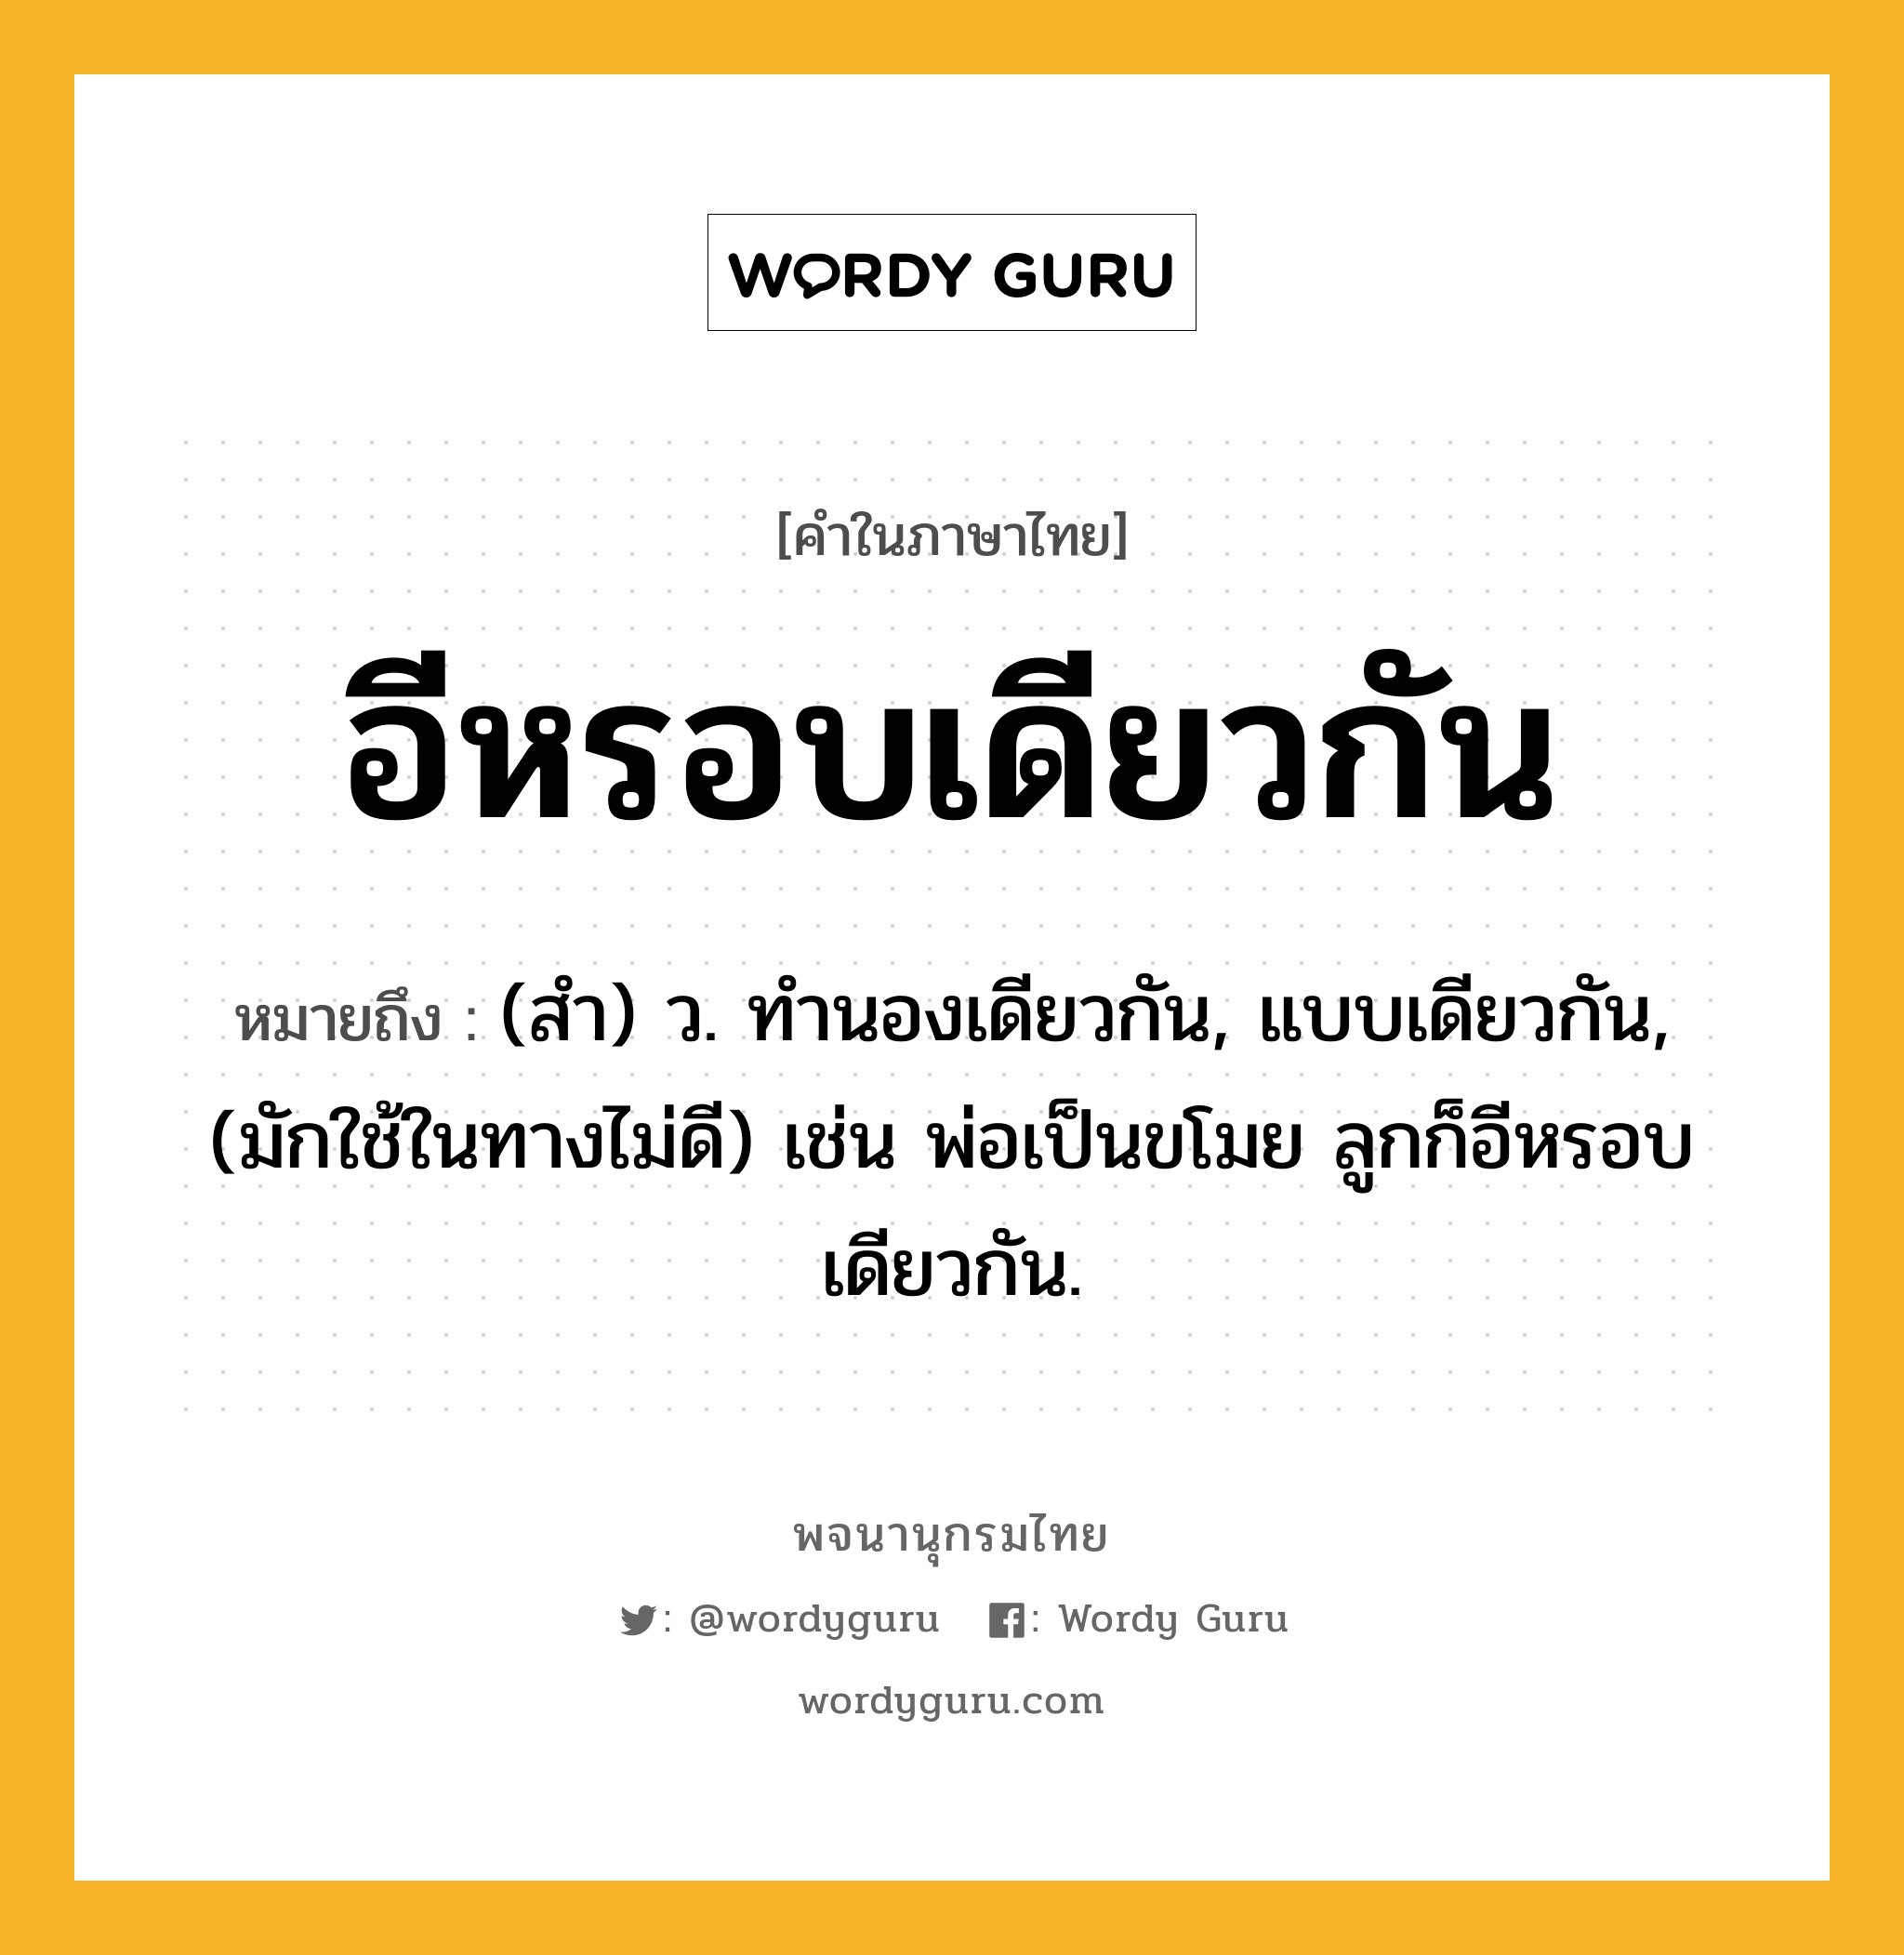 อีหรอบเดียวกัน หมายถึงอะไร?, คำในภาษาไทย อีหรอบเดียวกัน หมายถึง (สํา) ว. ทํานองเดียวกัน, แบบเดียวกัน, (มักใช้ในทางไม่ดี) เช่น พ่อเป็นขโมย ลูกก็อีหรอบเดียวกัน.